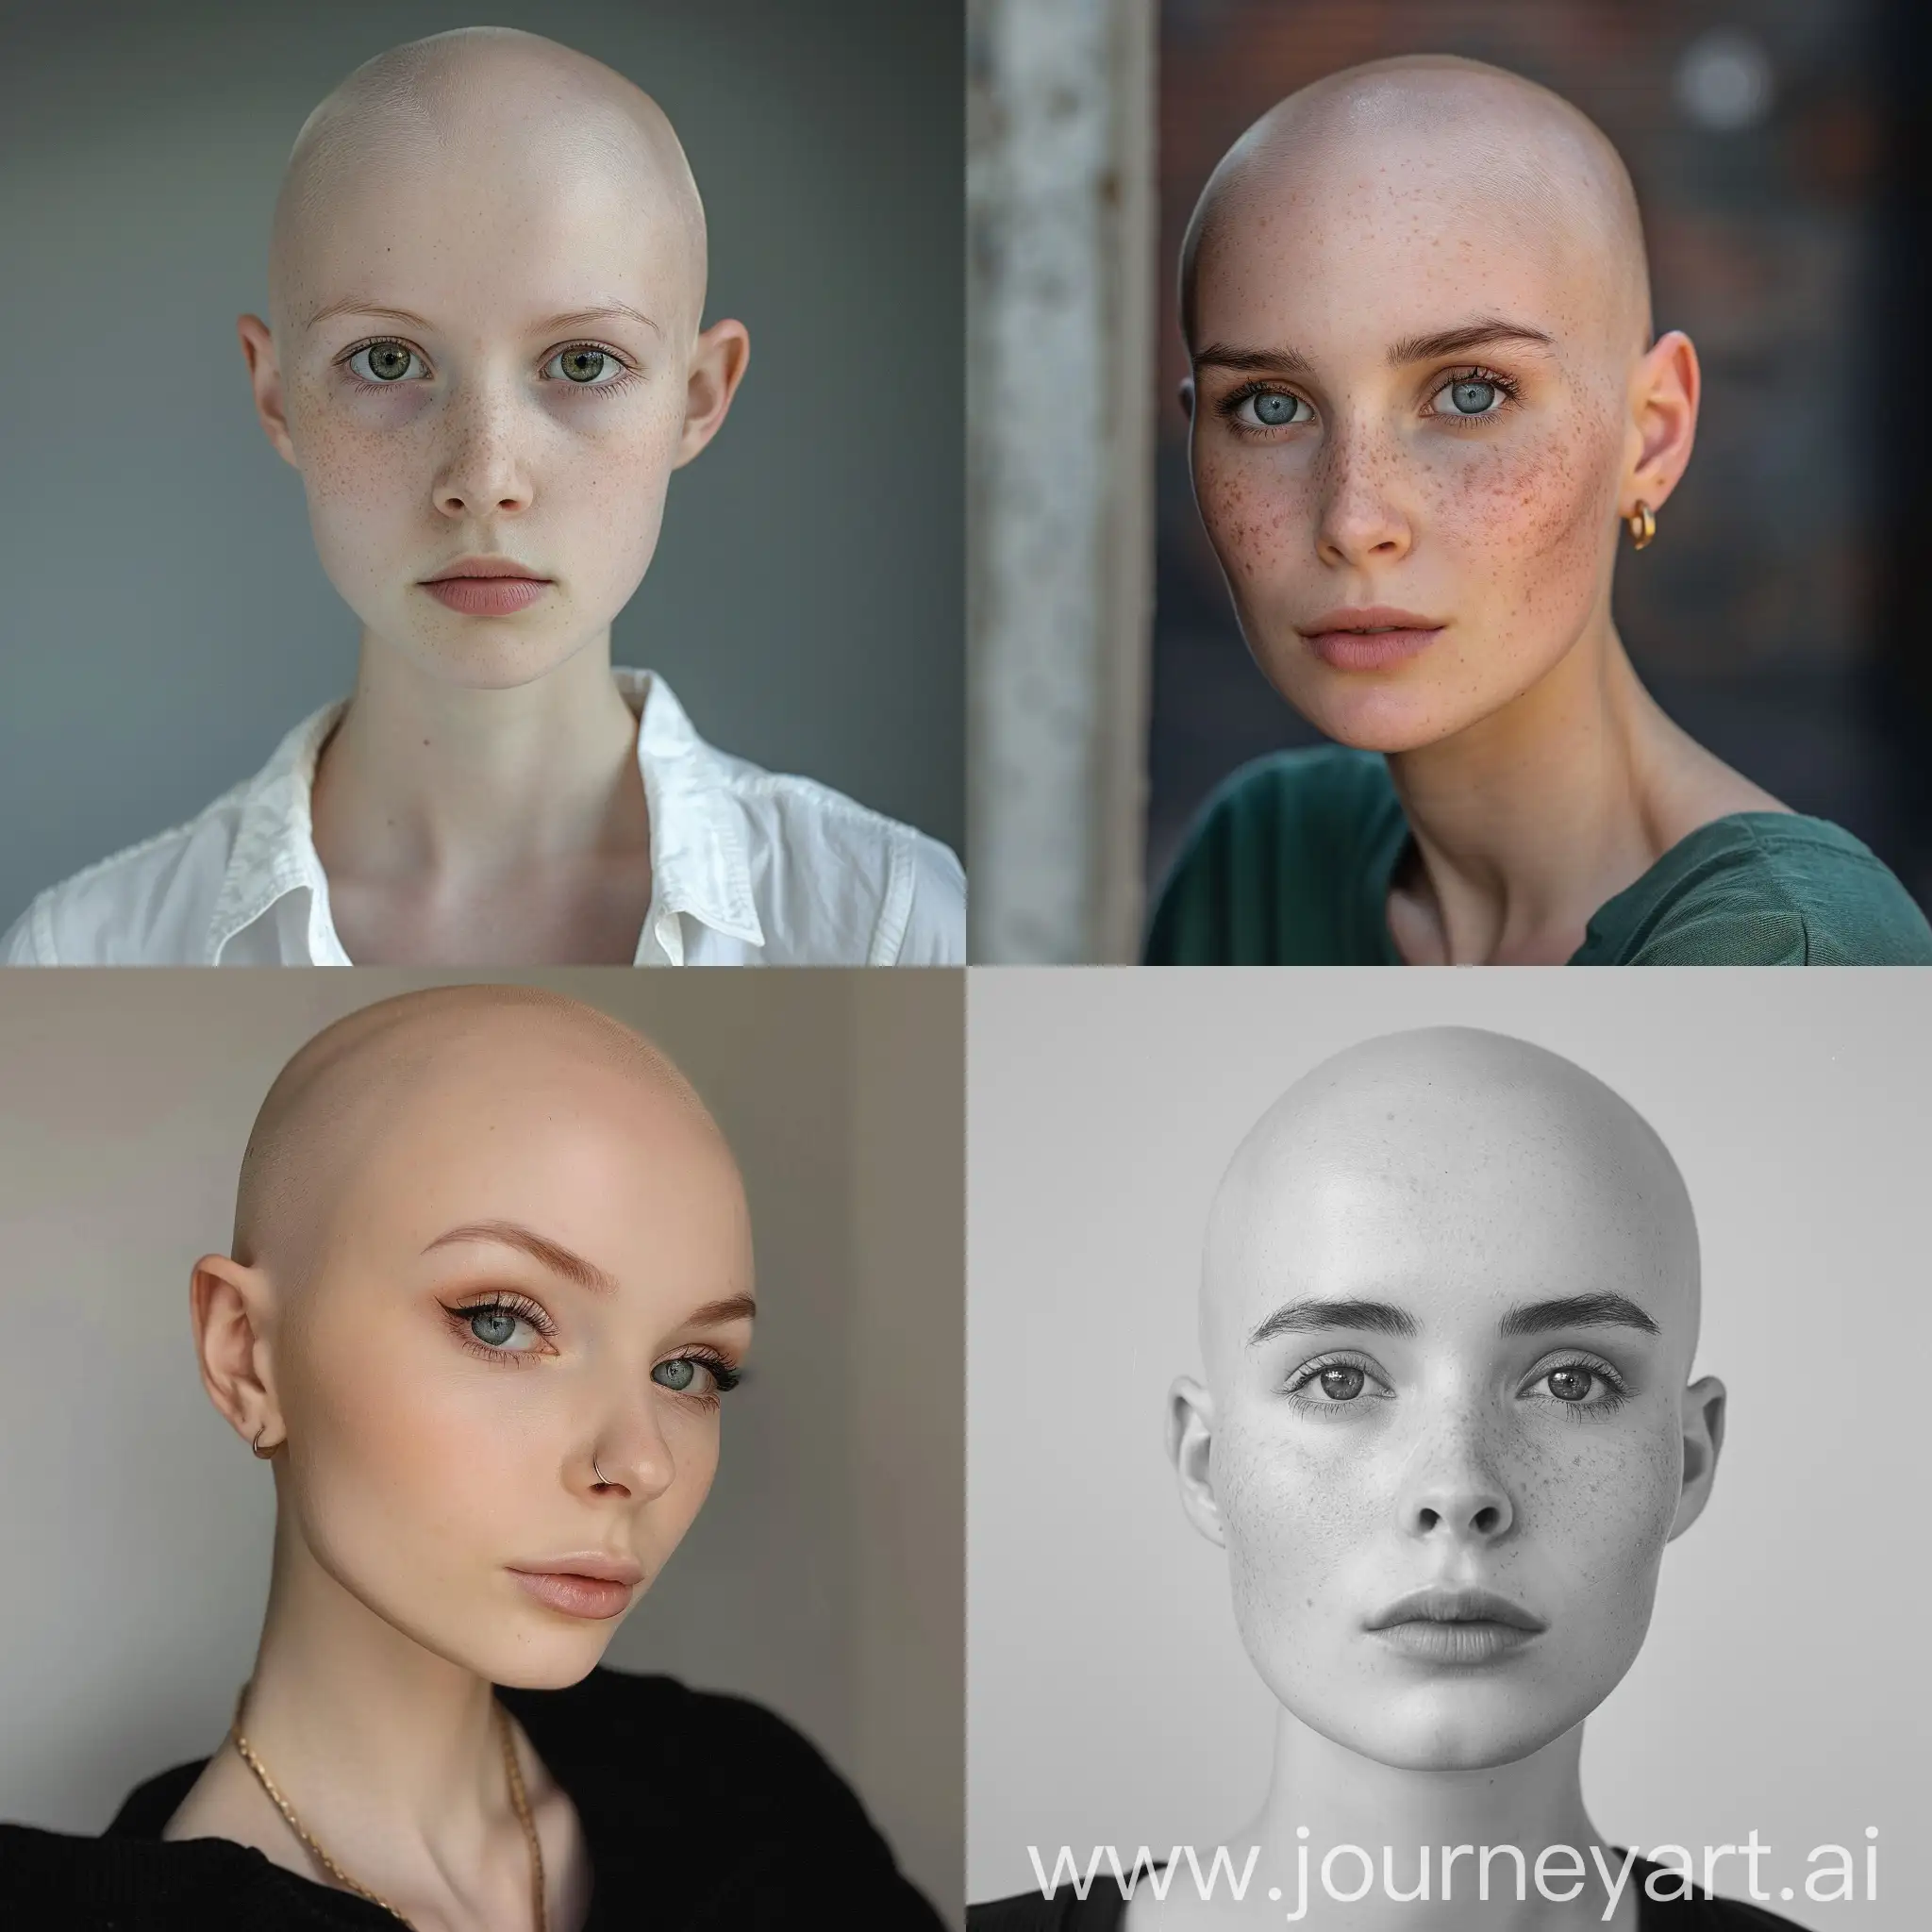 Full face photo of bald girl